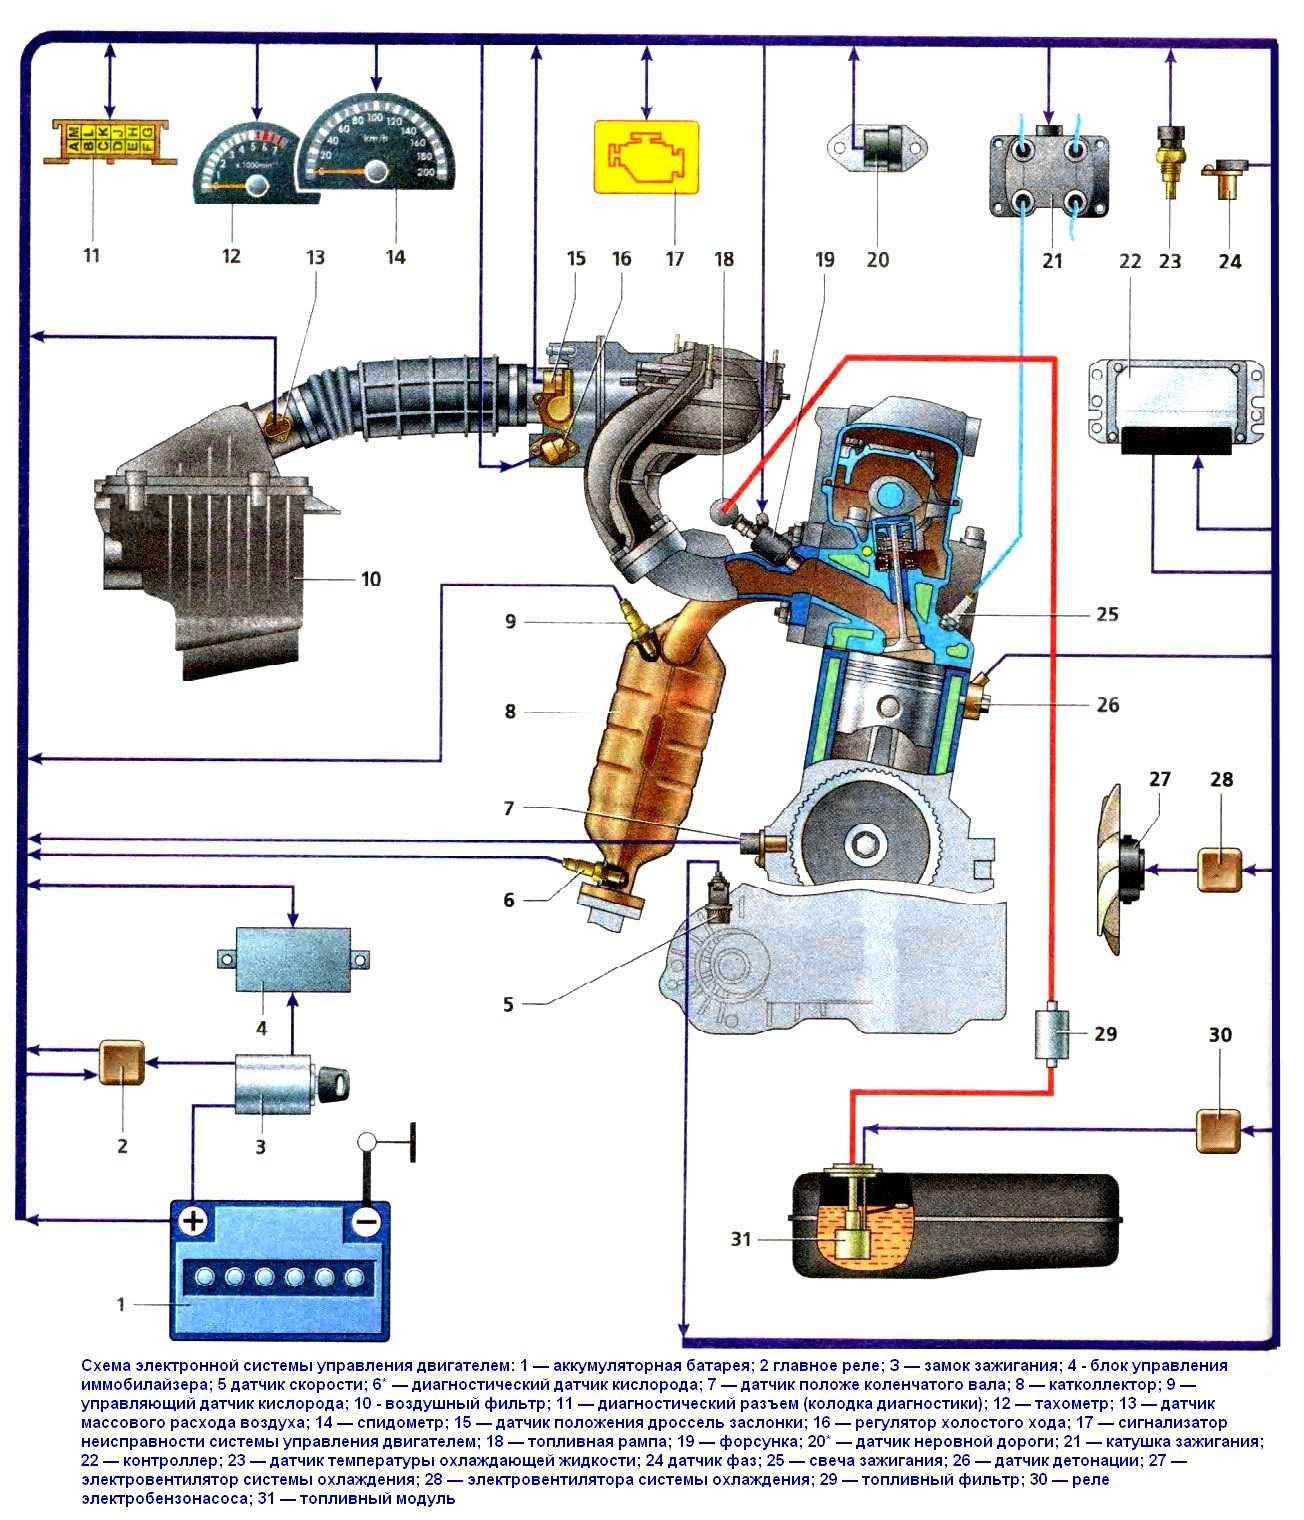 VAZ-21114 engine management system